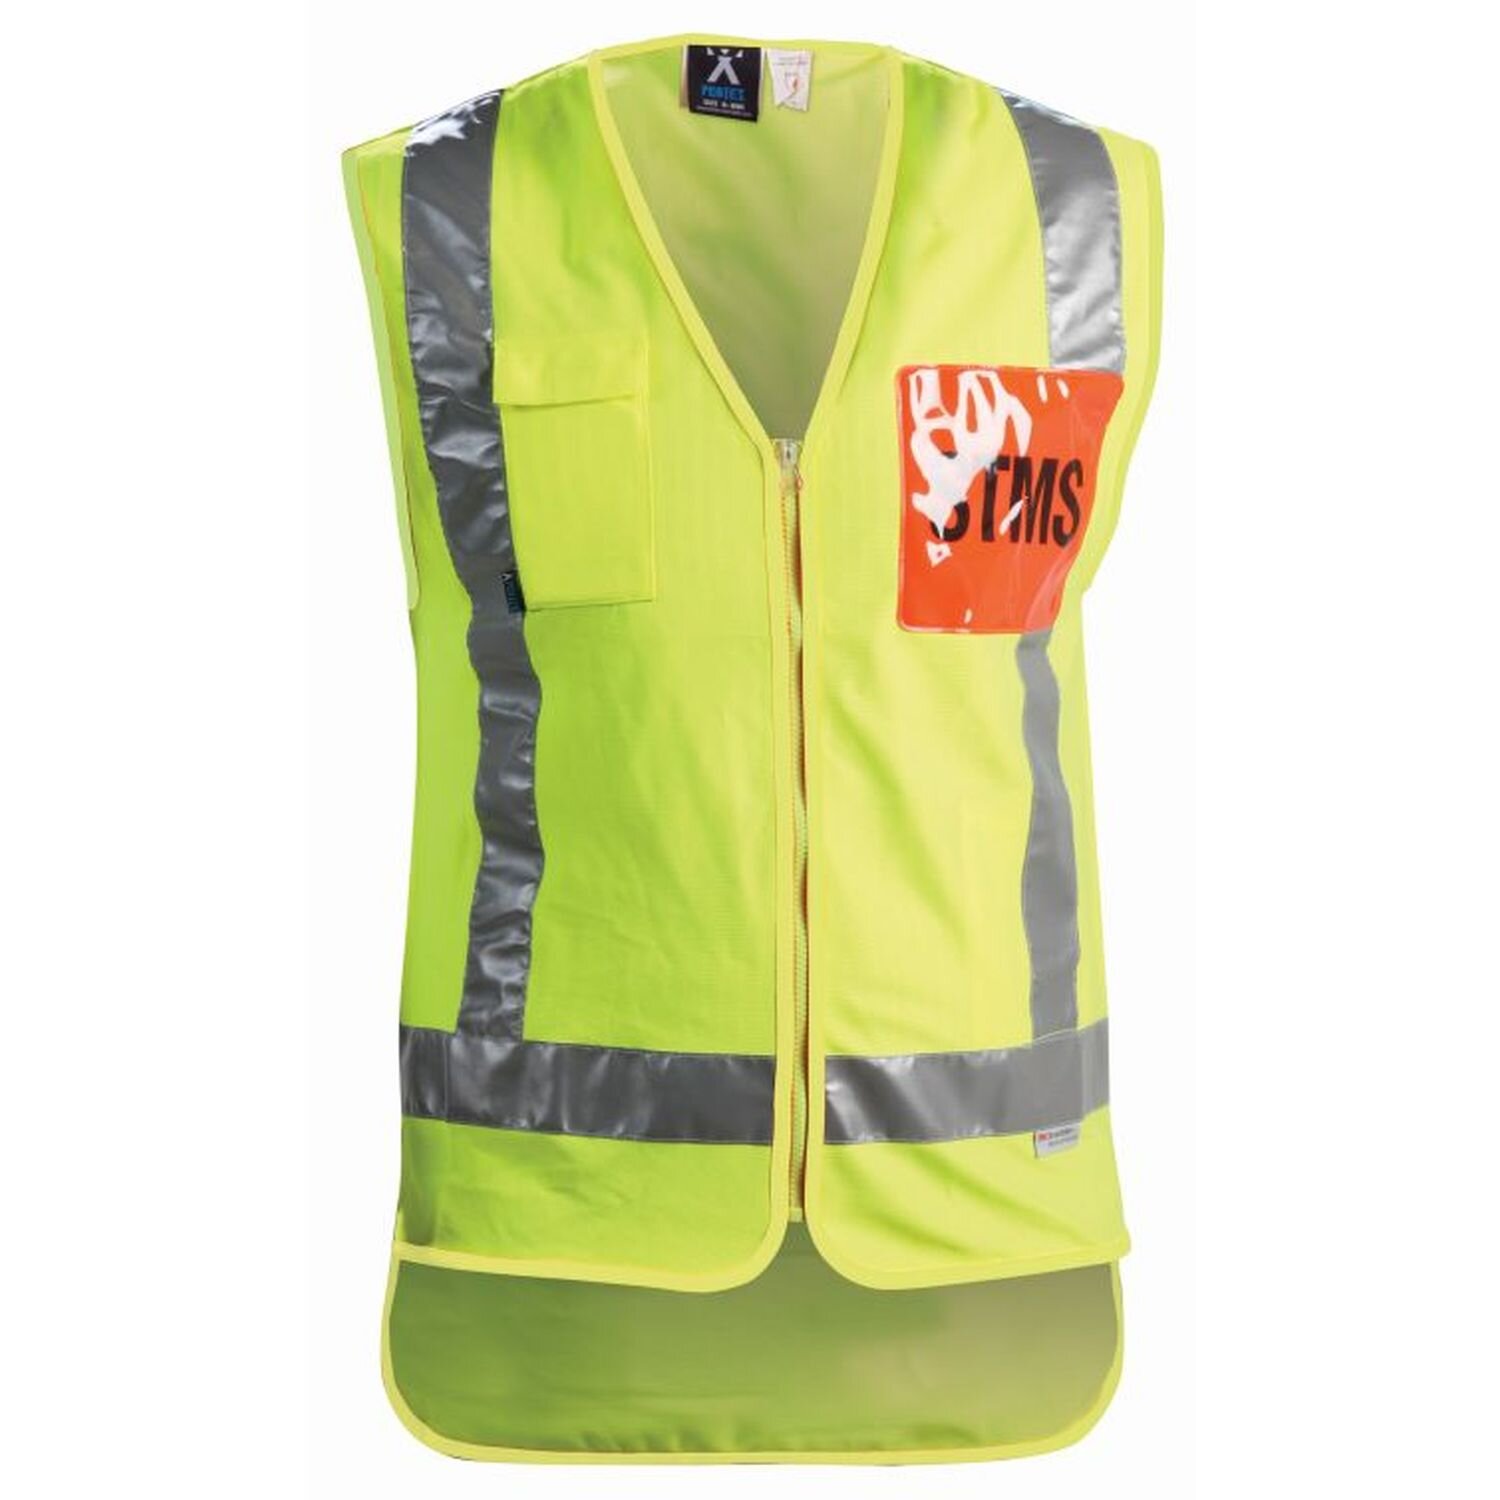 STMS Hi Vis TTMC-W Supervisor Safety Vest